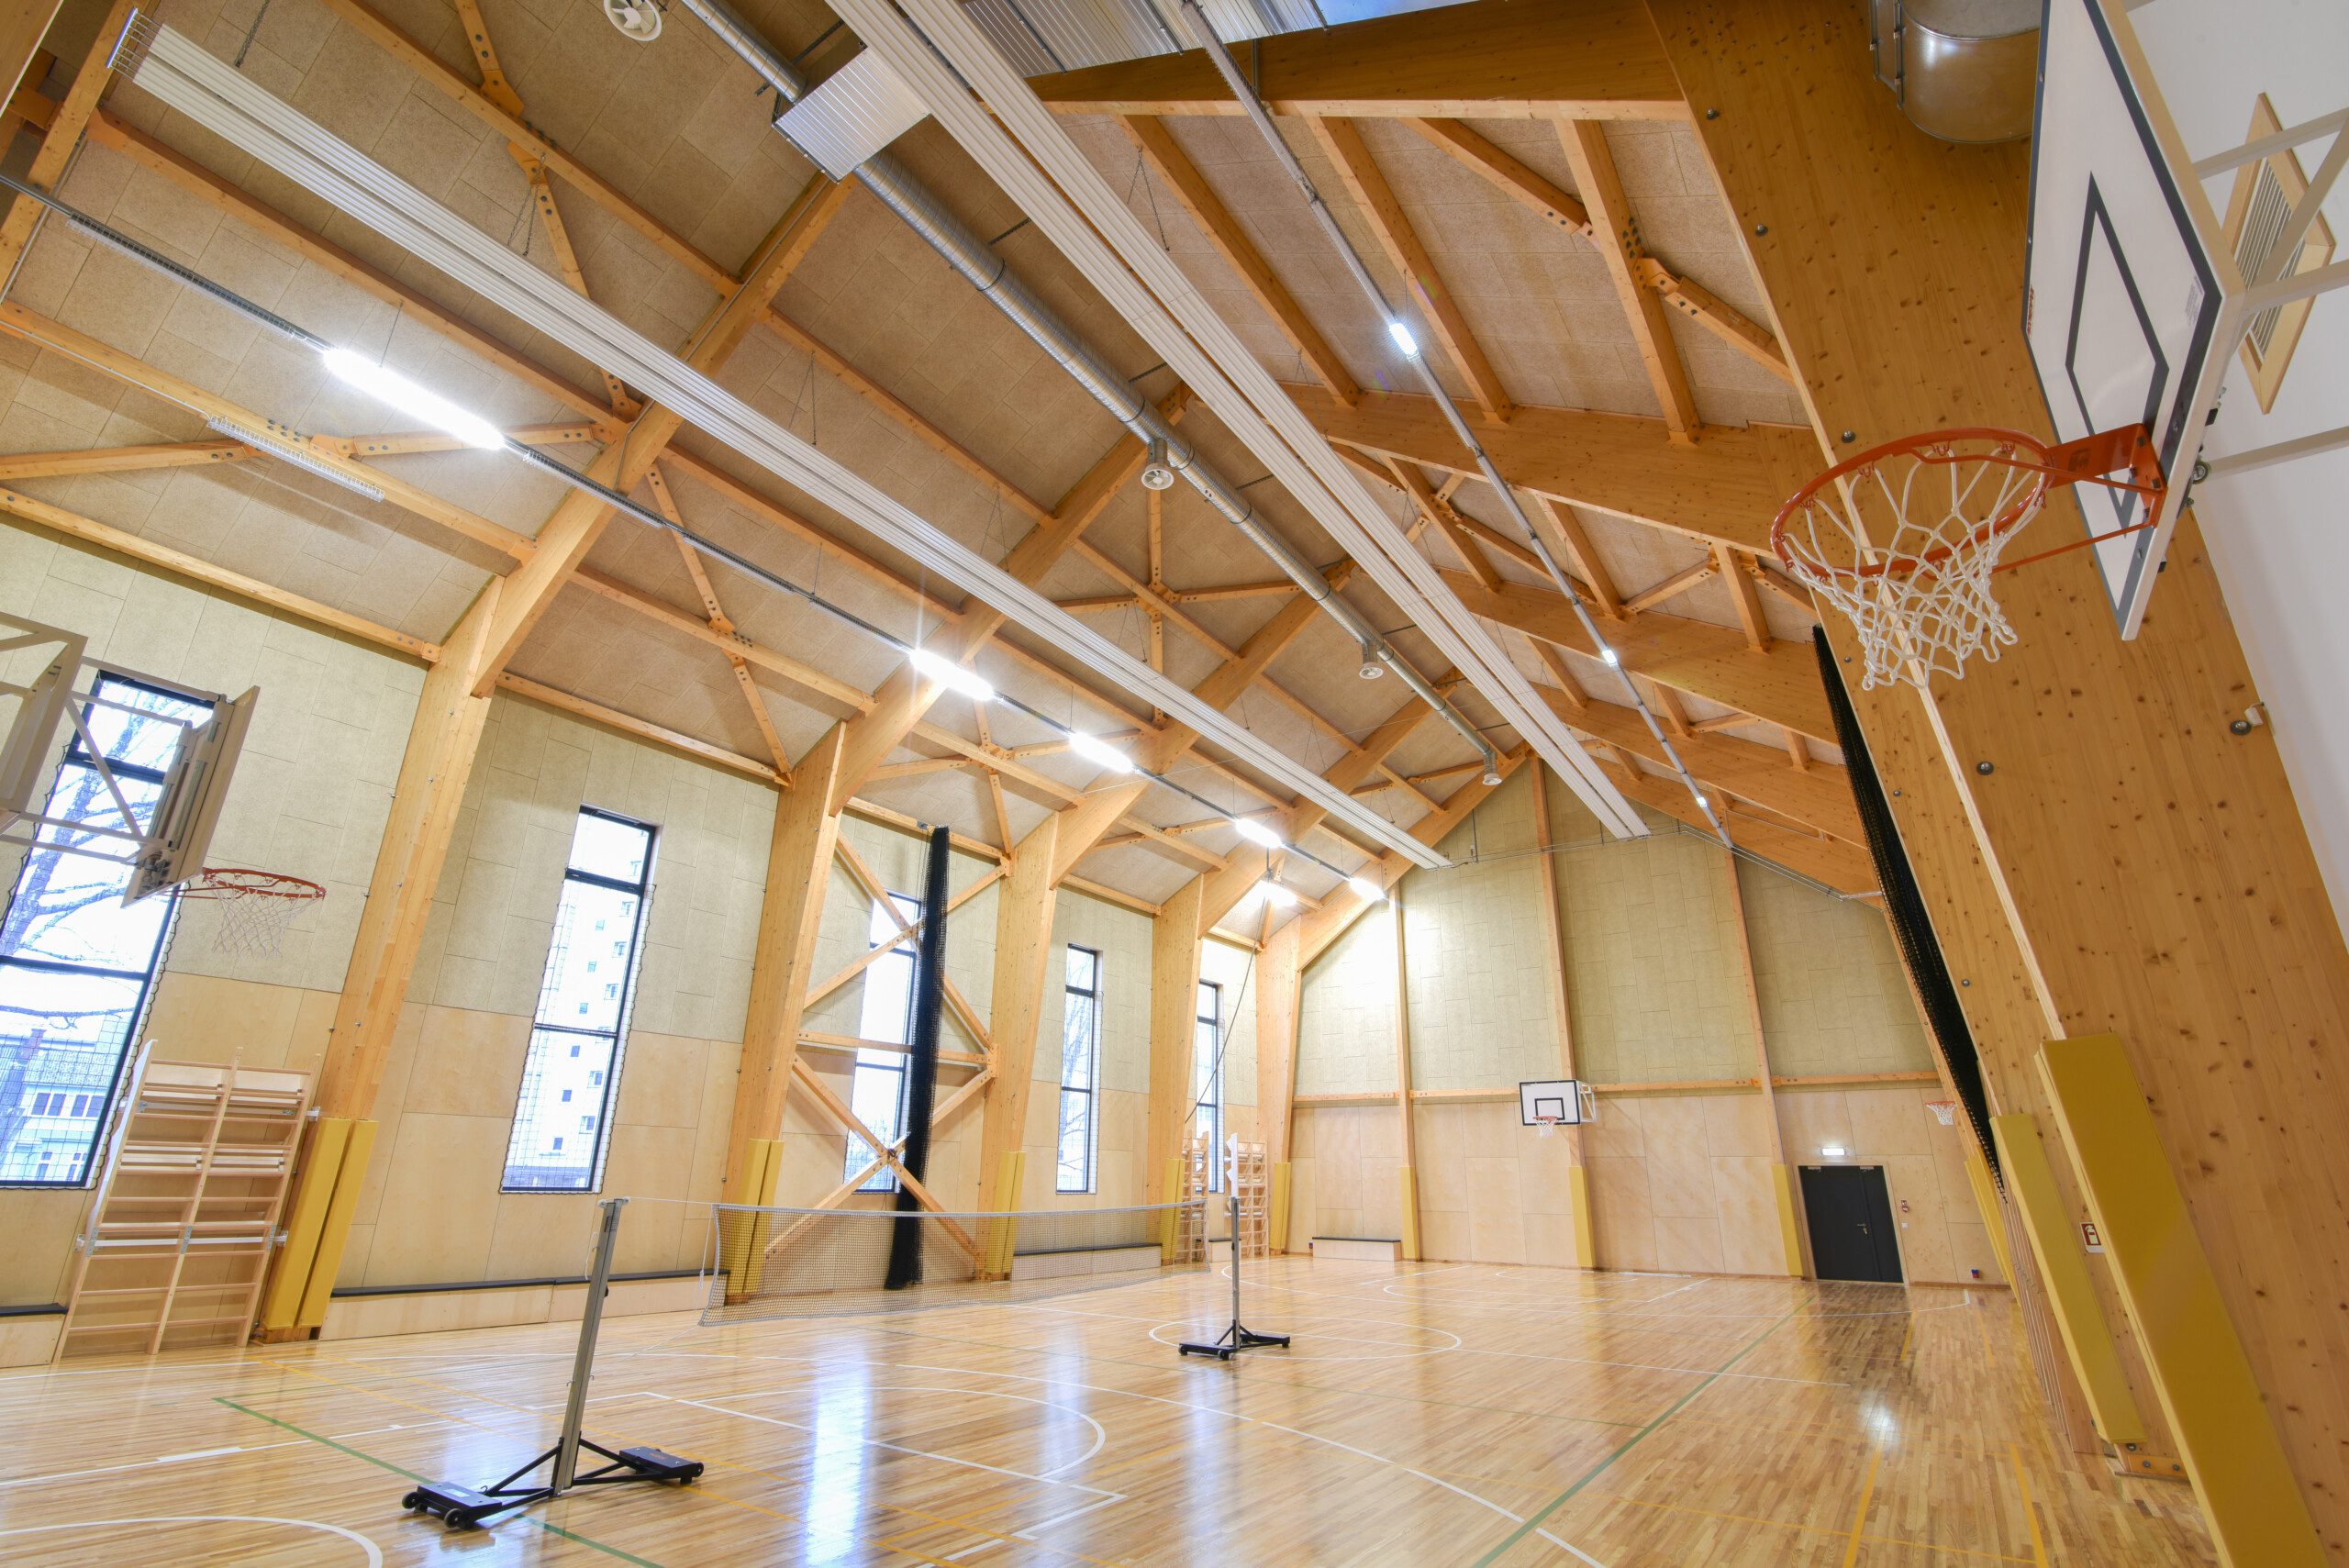 Sports hall in Latvia Photo 3